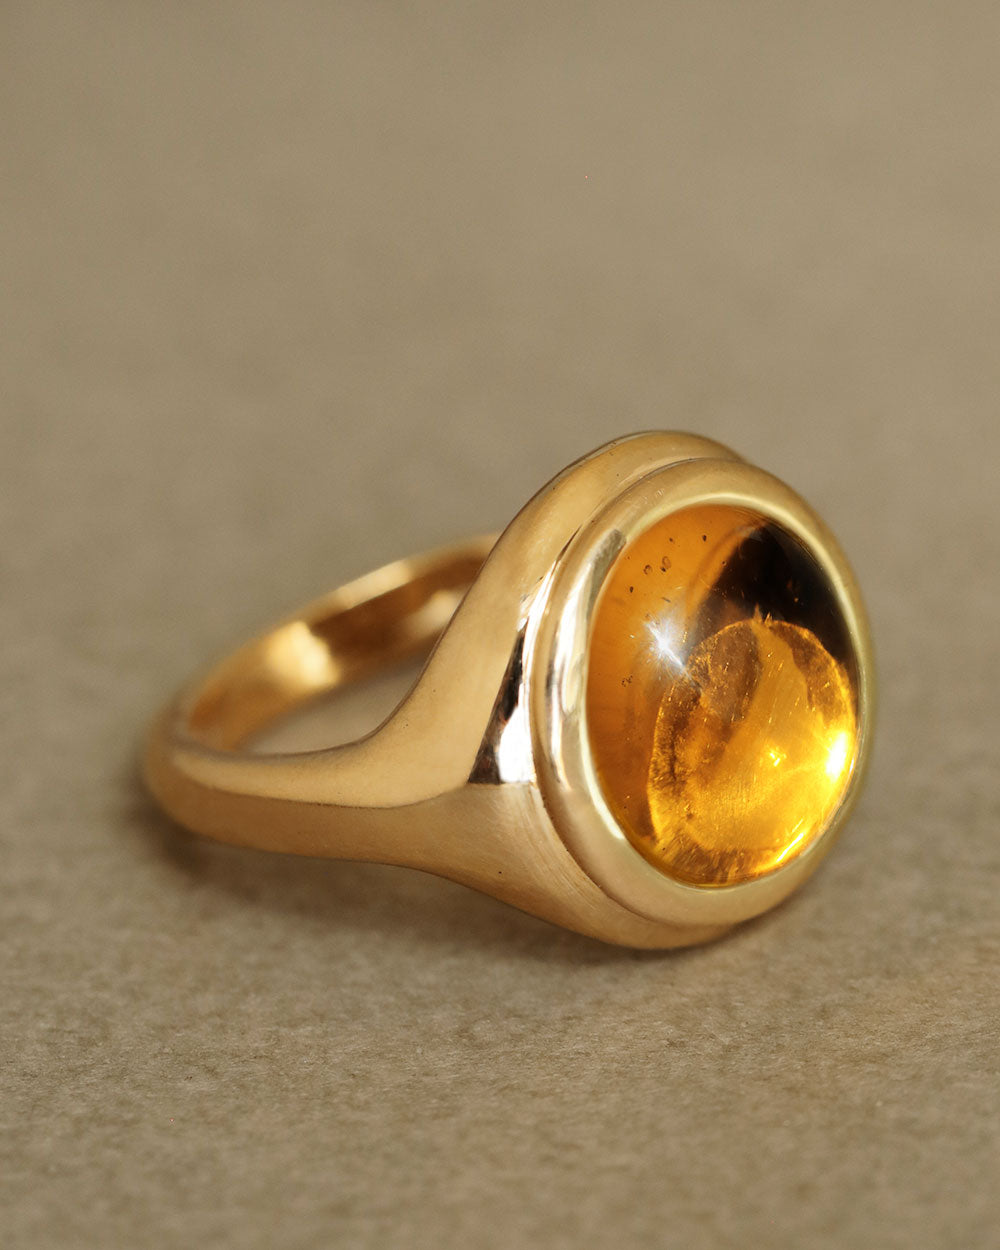 33 Carat Round Diamond Ring - 14K Yellow Gold – Marie's Jewelry Store